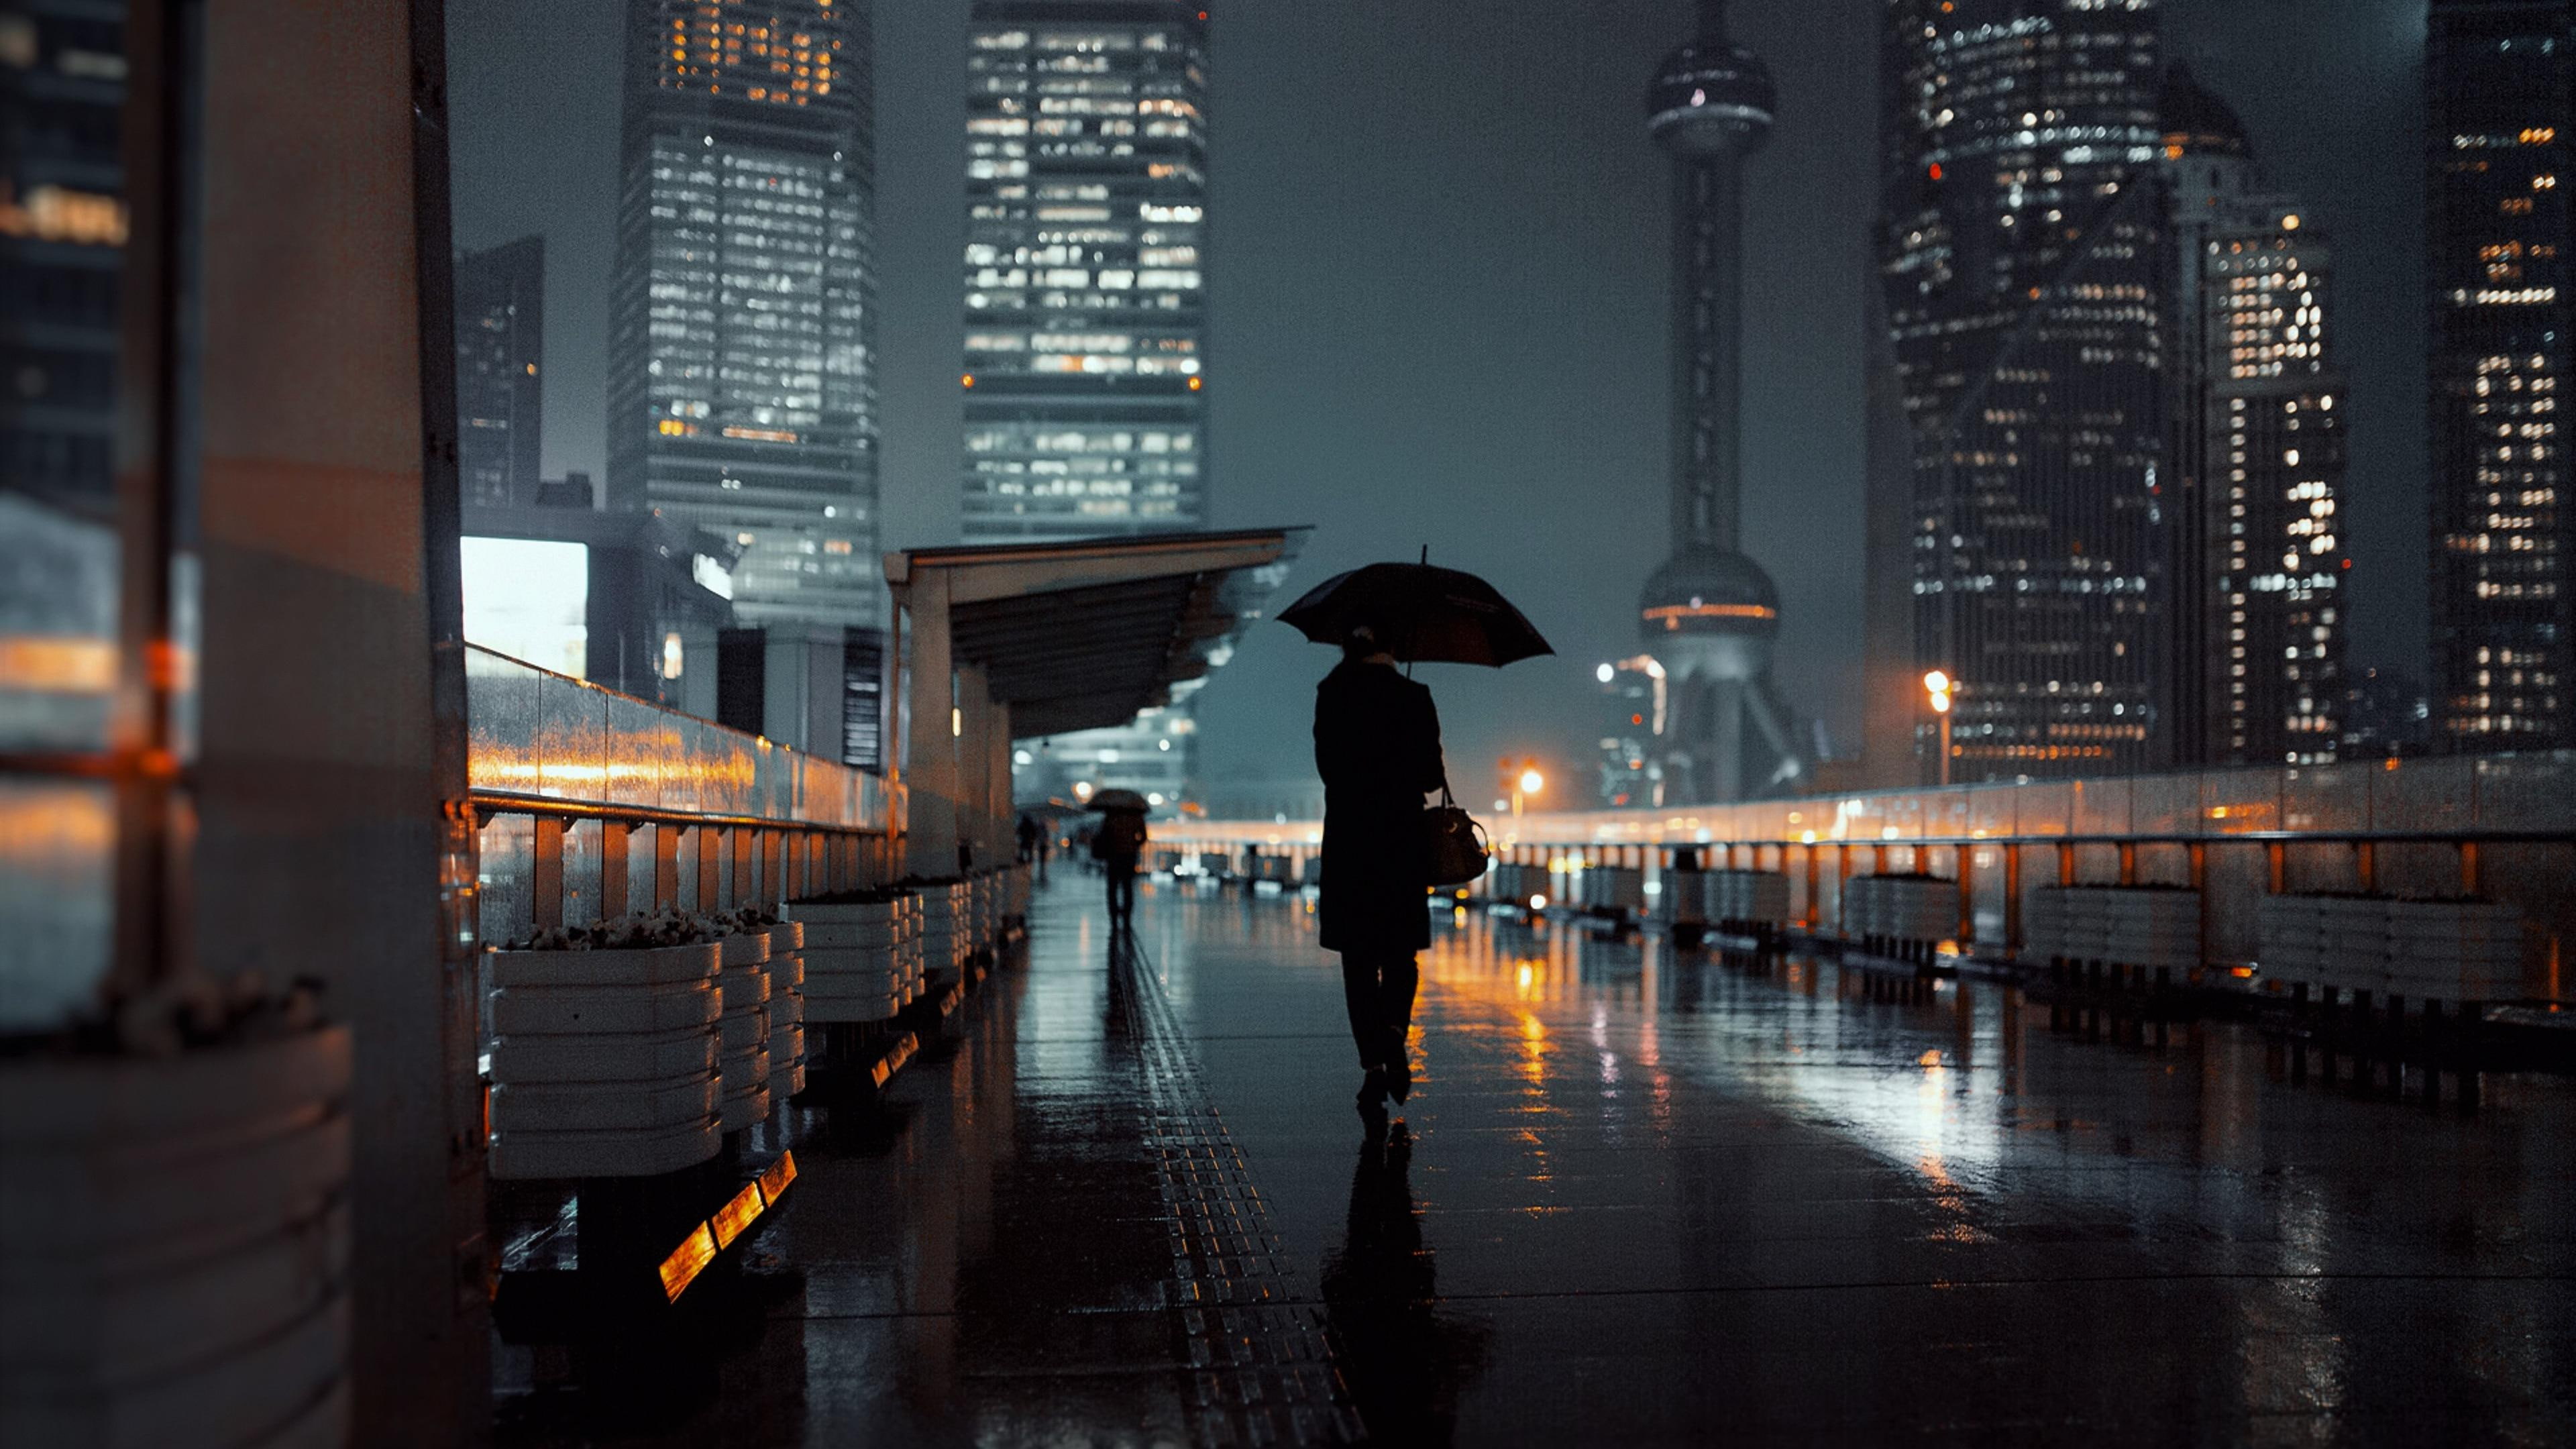 rain, rainy night, umbrella, silhouette, street view, wet, raining